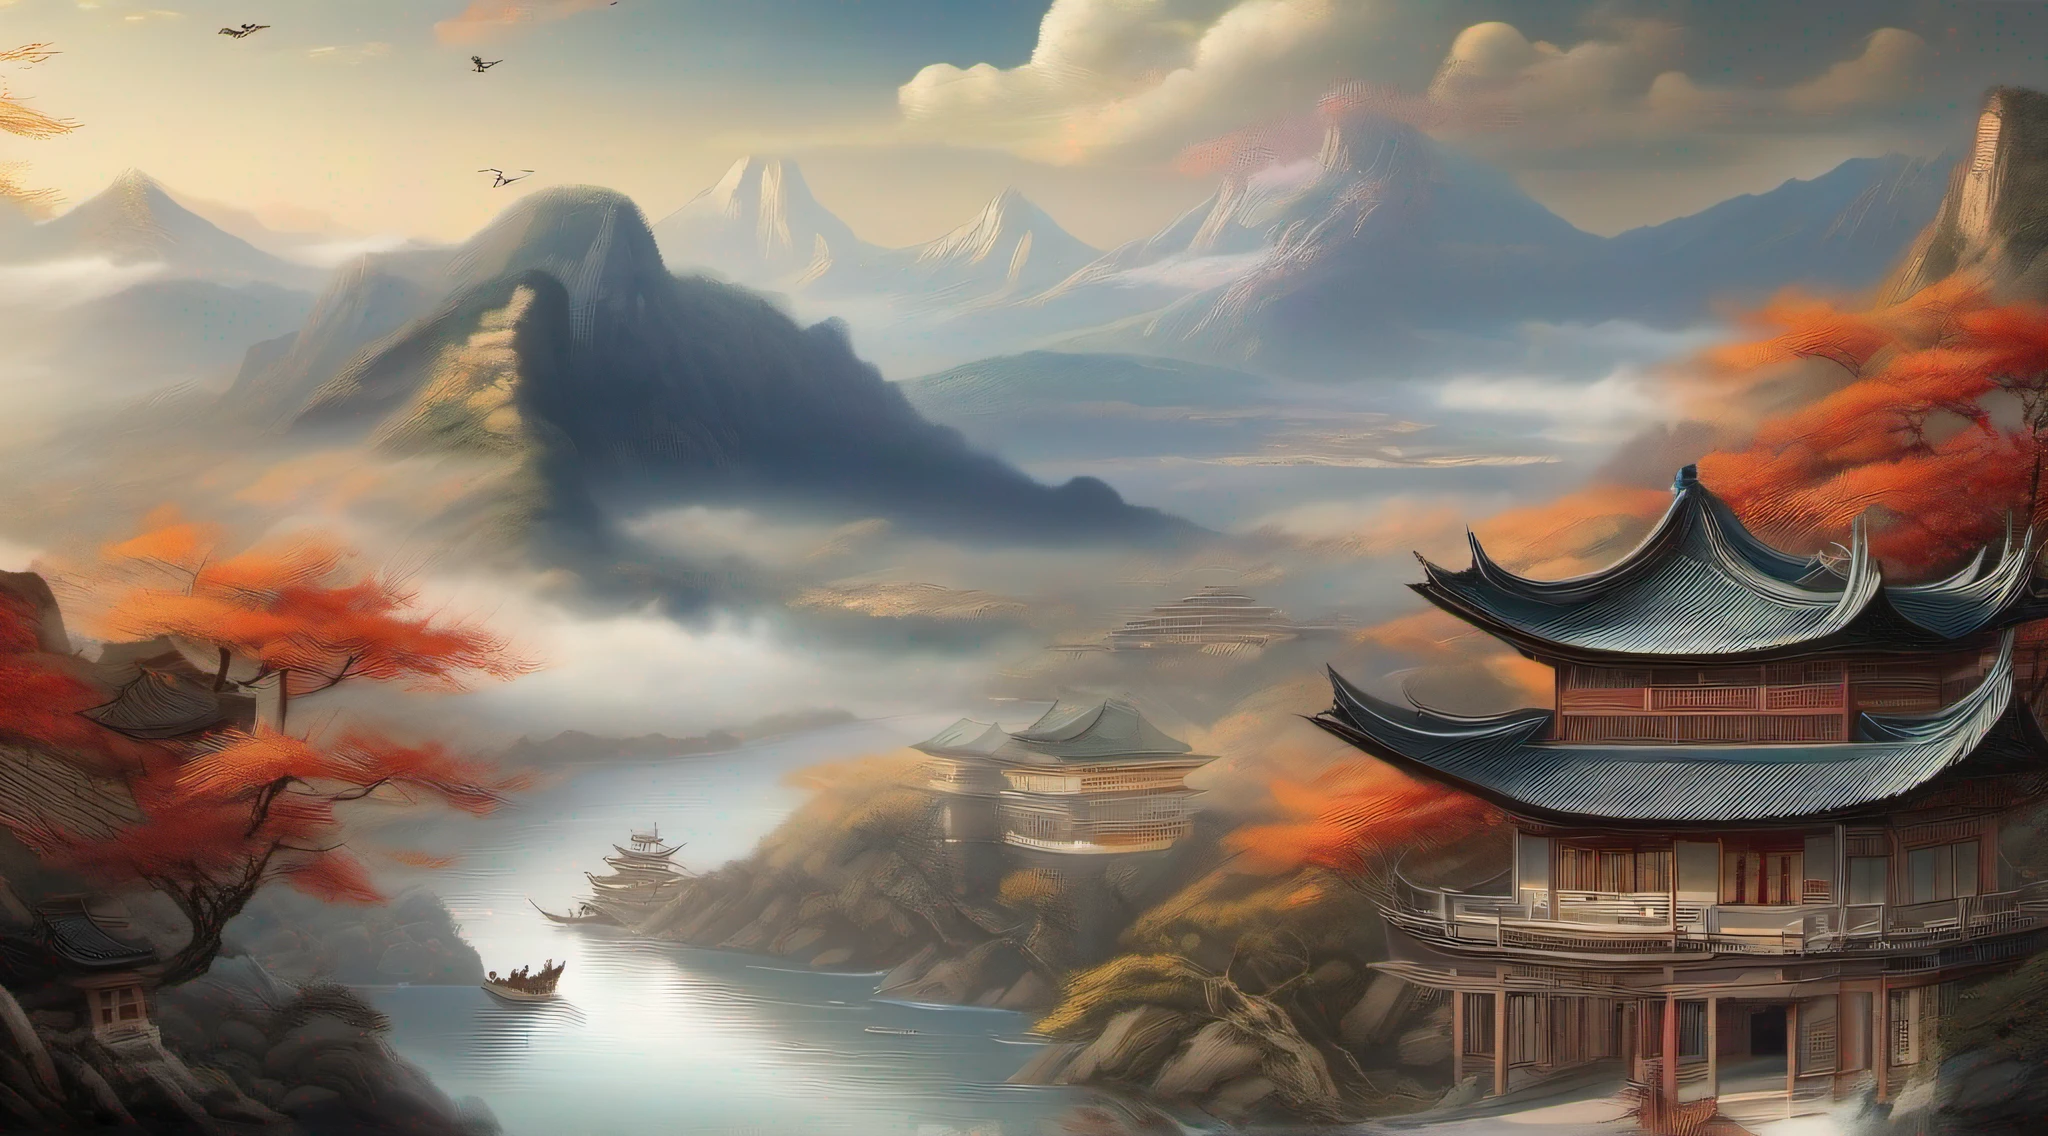 고대 중국 그림, 고대 중국 배경, 산, 강하, 상서로운 구름, 파빌리온, 햇빛, 걸작, 슈퍼 디테일, 서사적 구성, 울트라 HD, 고품질, 매우 상세한, 공식 예술, 통합 8K 벽지, 슈퍼 디테일, 32k -- v 6